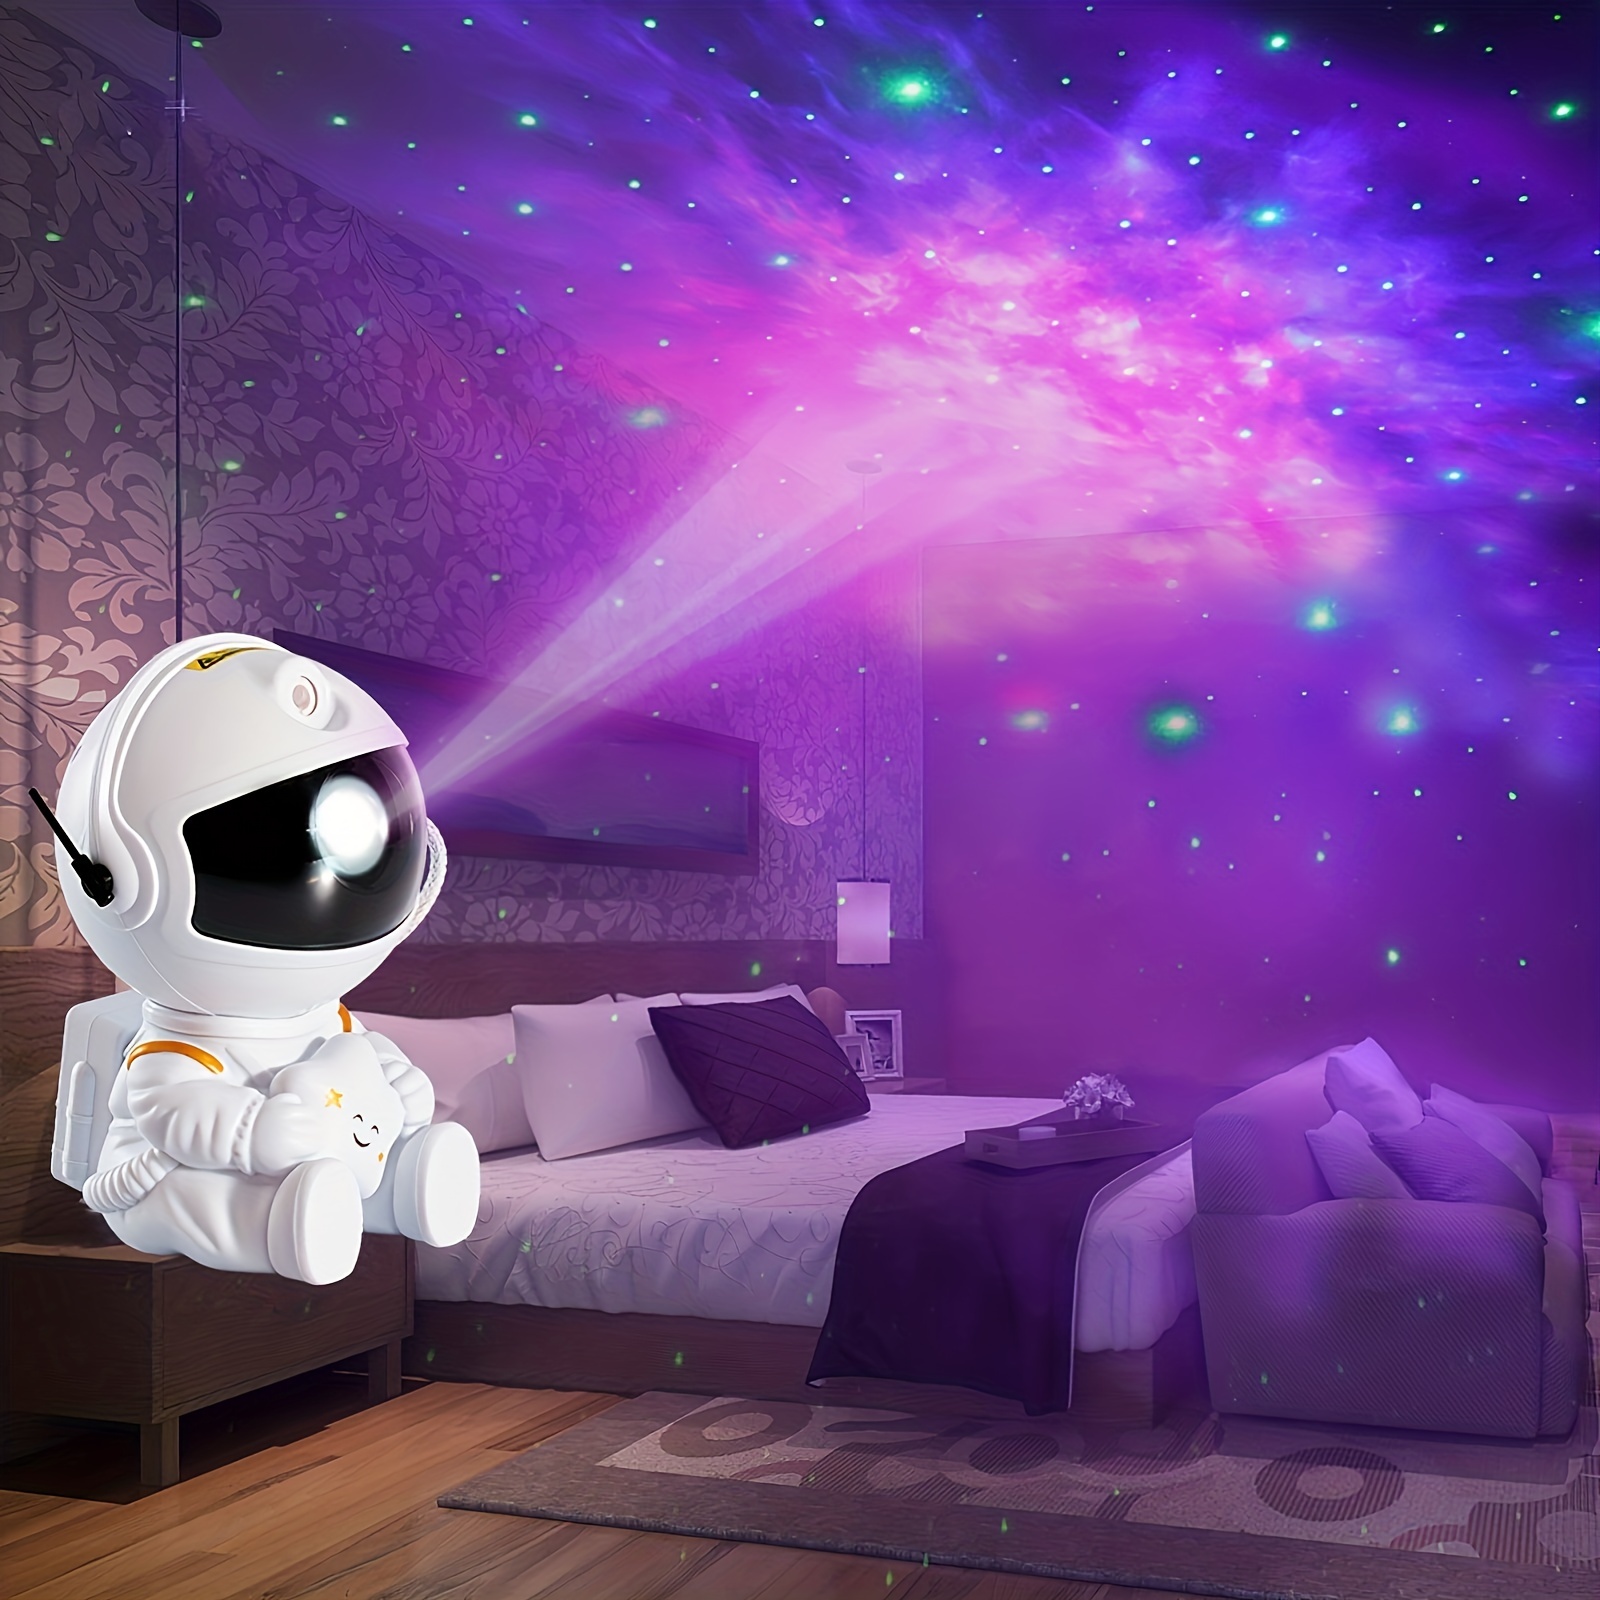 Projecteur LED Galaxy Star pour la décoration de la maison, veilleus